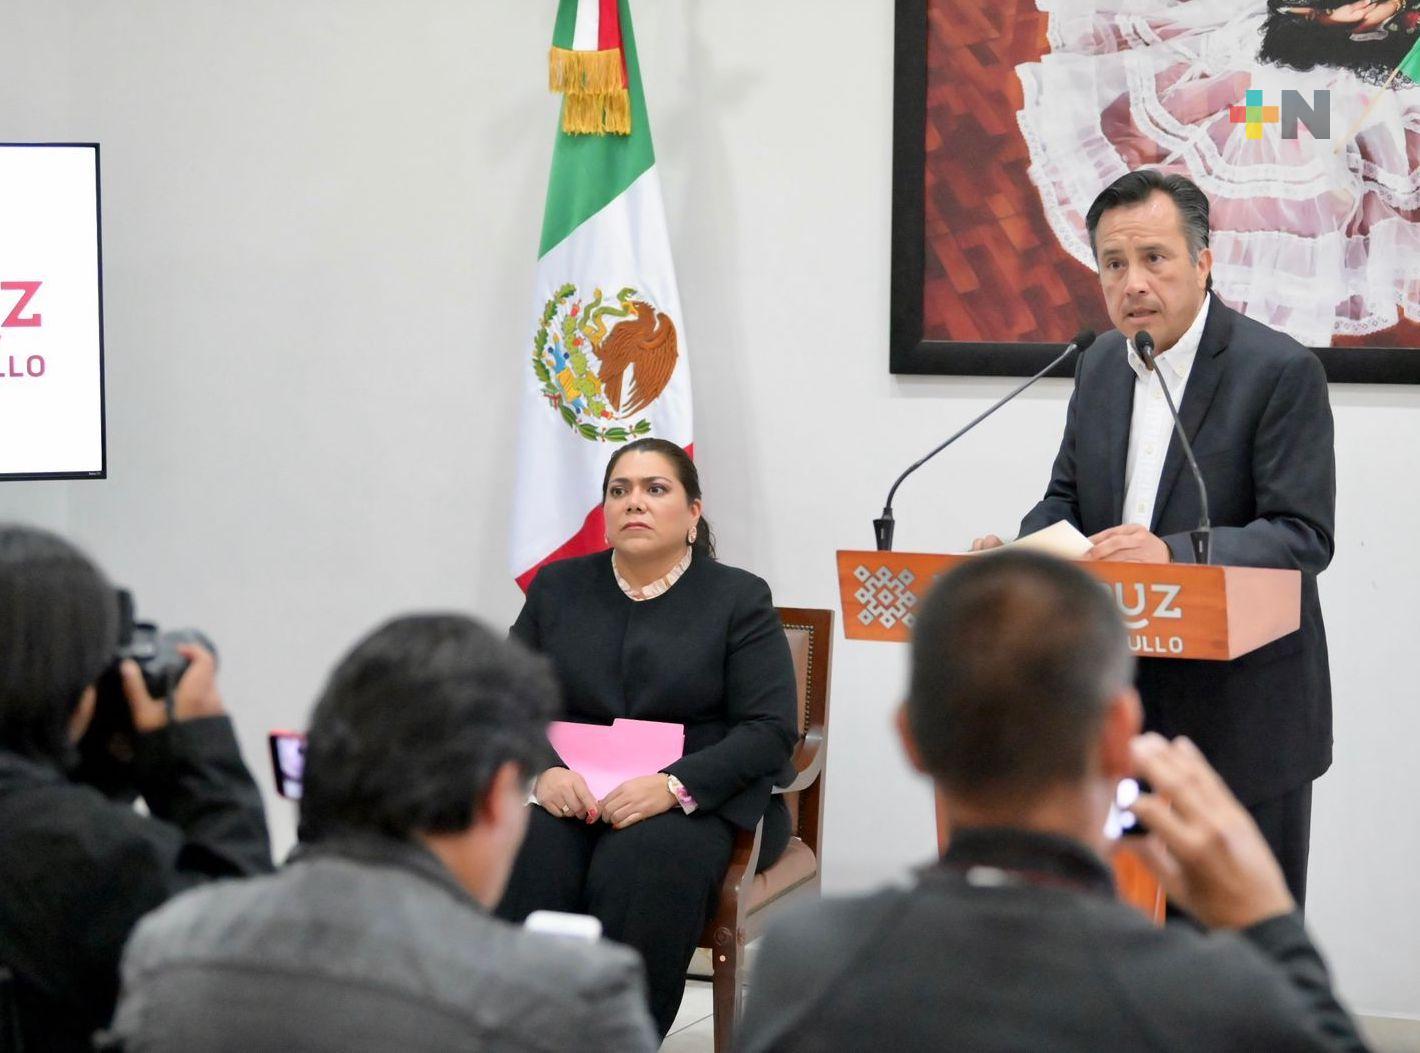 Nosotros ponemos a delincuentes en la cárcel y jueces los liberan: Cuitláhuac García